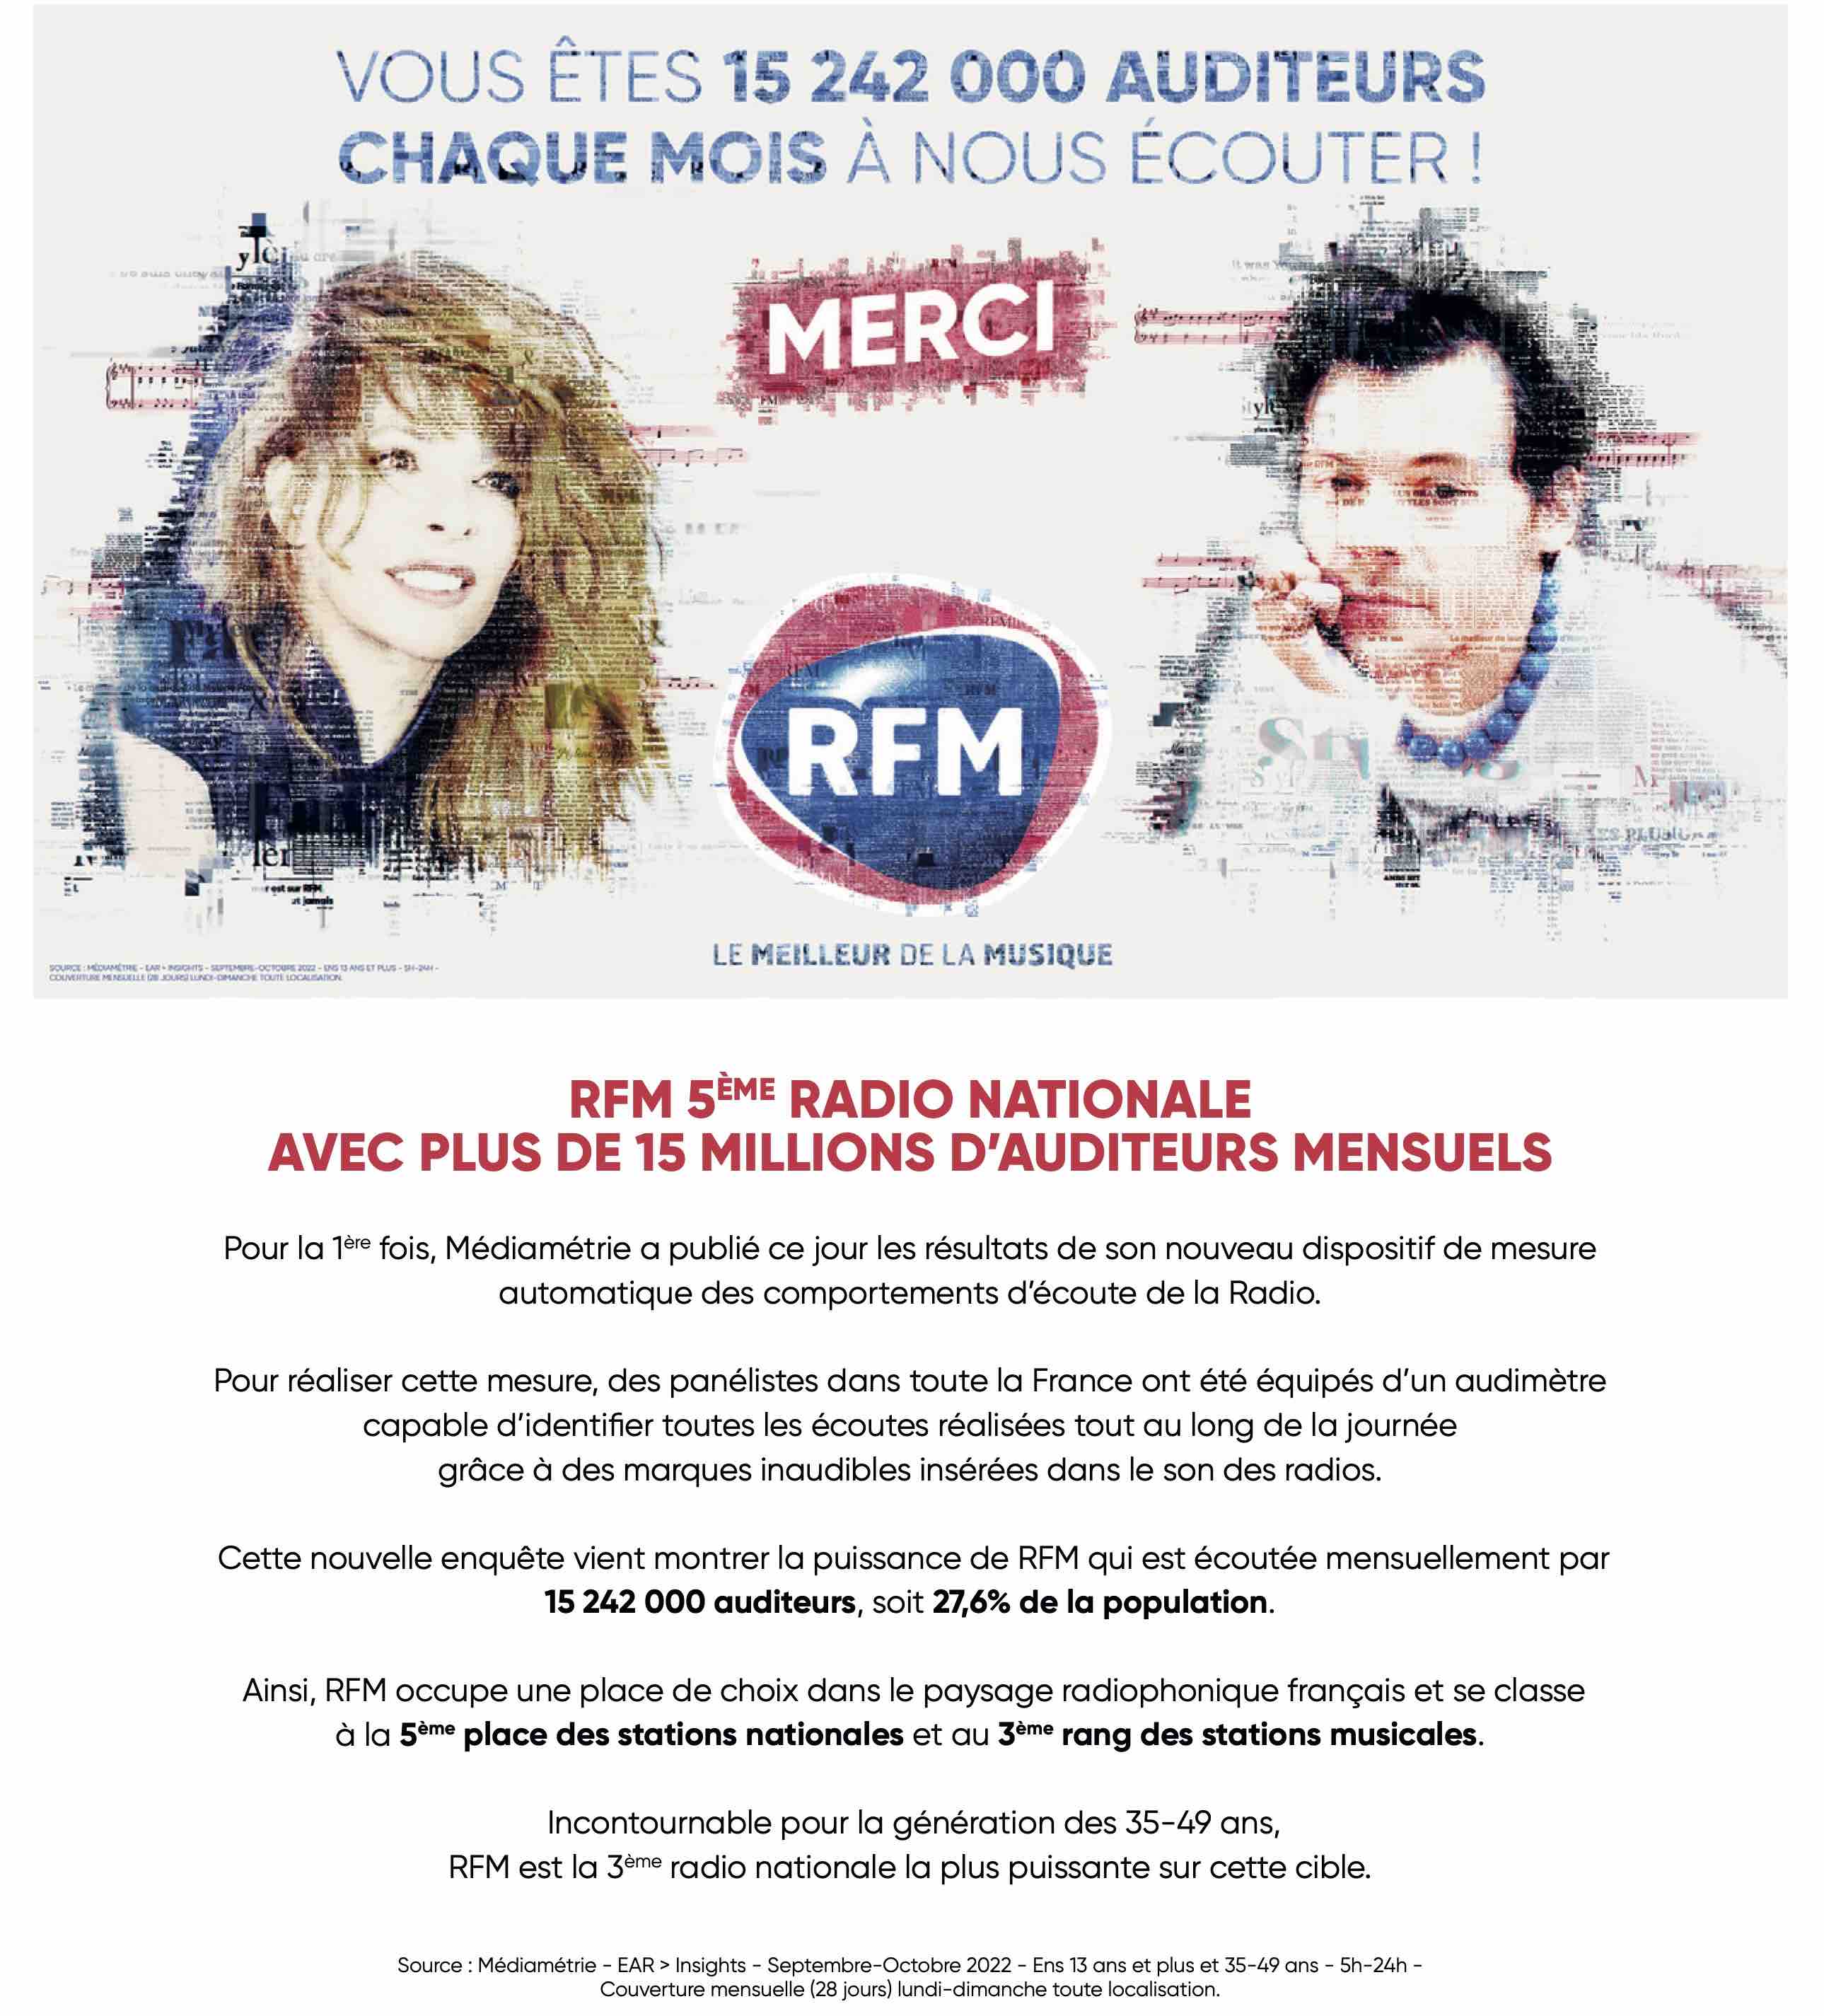 RFM 5e radio nationale avec plus de 15 millions d'auditeurs mensuels